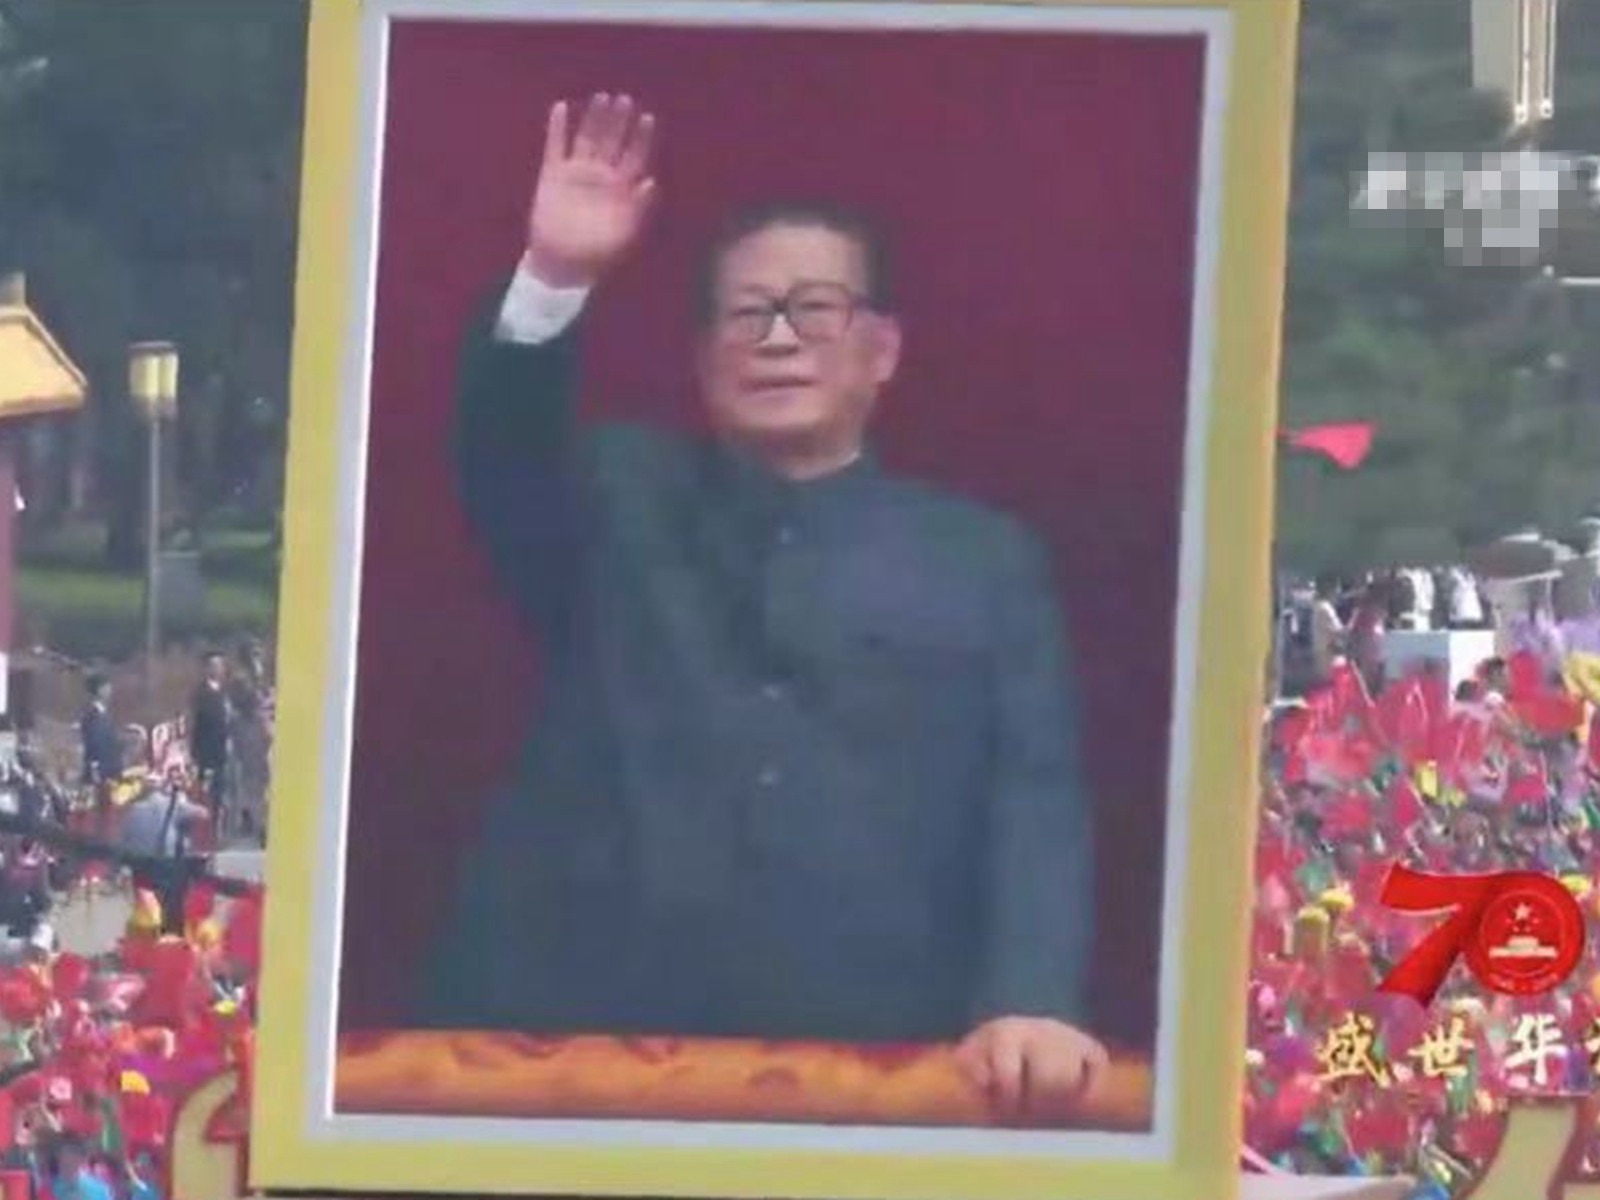 中共五代领导人巨幅画像亮相毛新宇薄熙永露面 图 多维新闻 中国